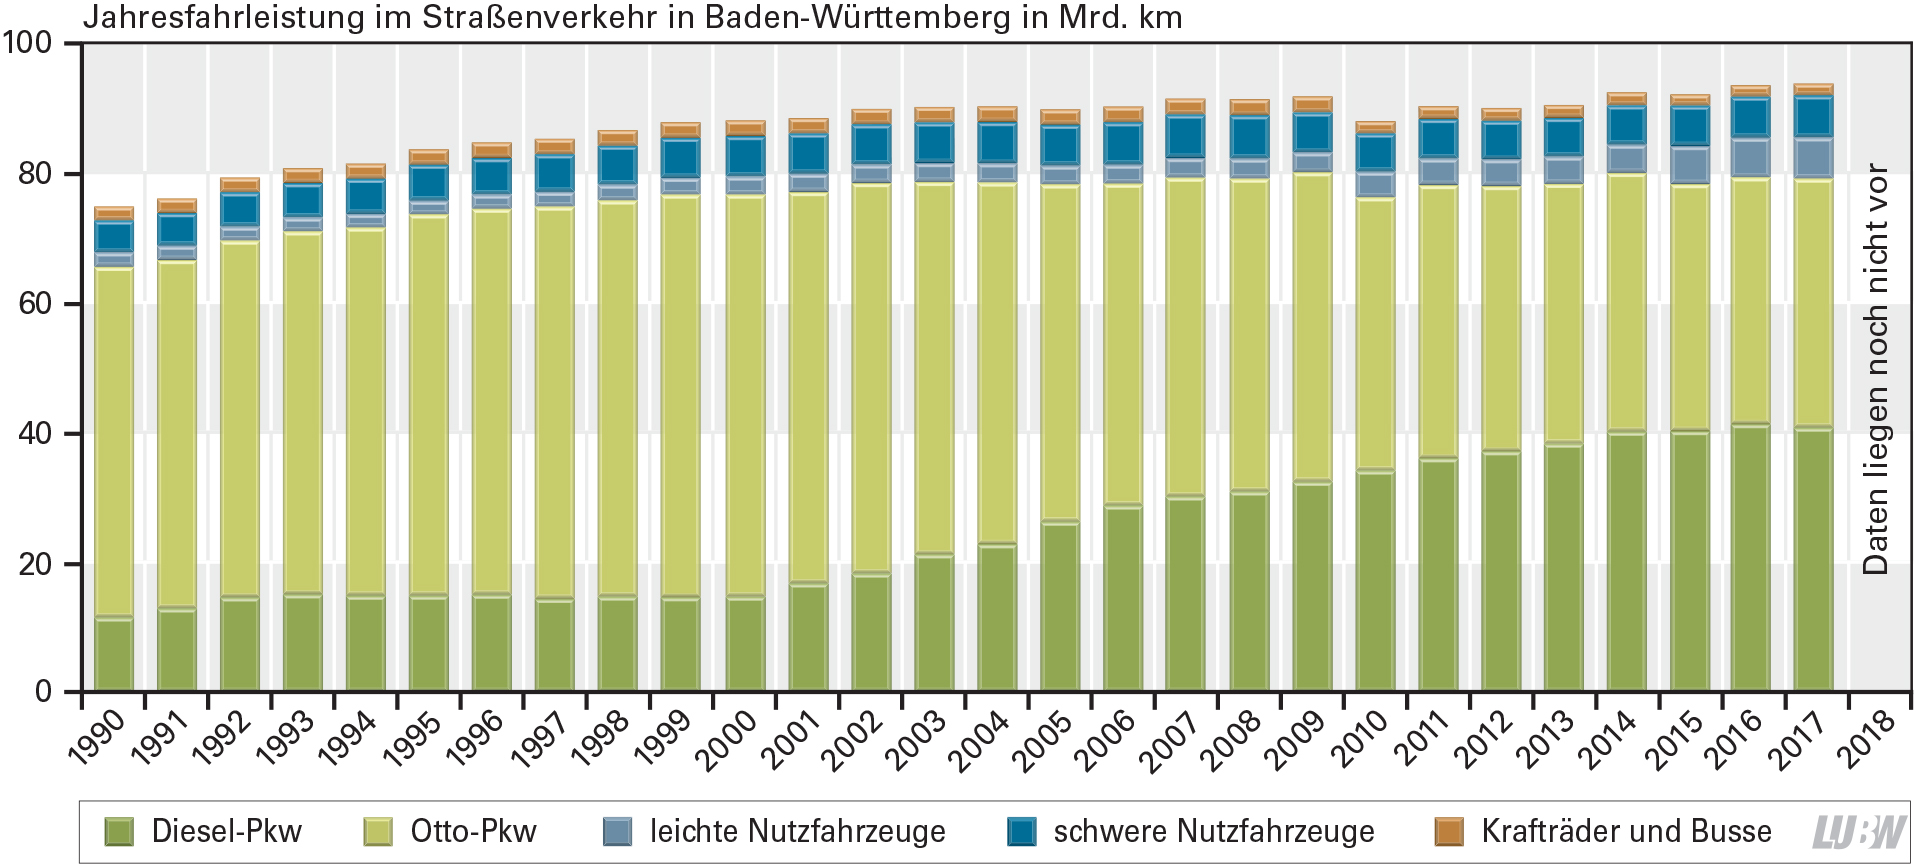 Fahrleistung der verschiedenen Fahrzeugteilnehmer im Straßenvekehr in Baden-Württemberg seit 1990 als gestapeltes Säulendiagramm dargestellt.